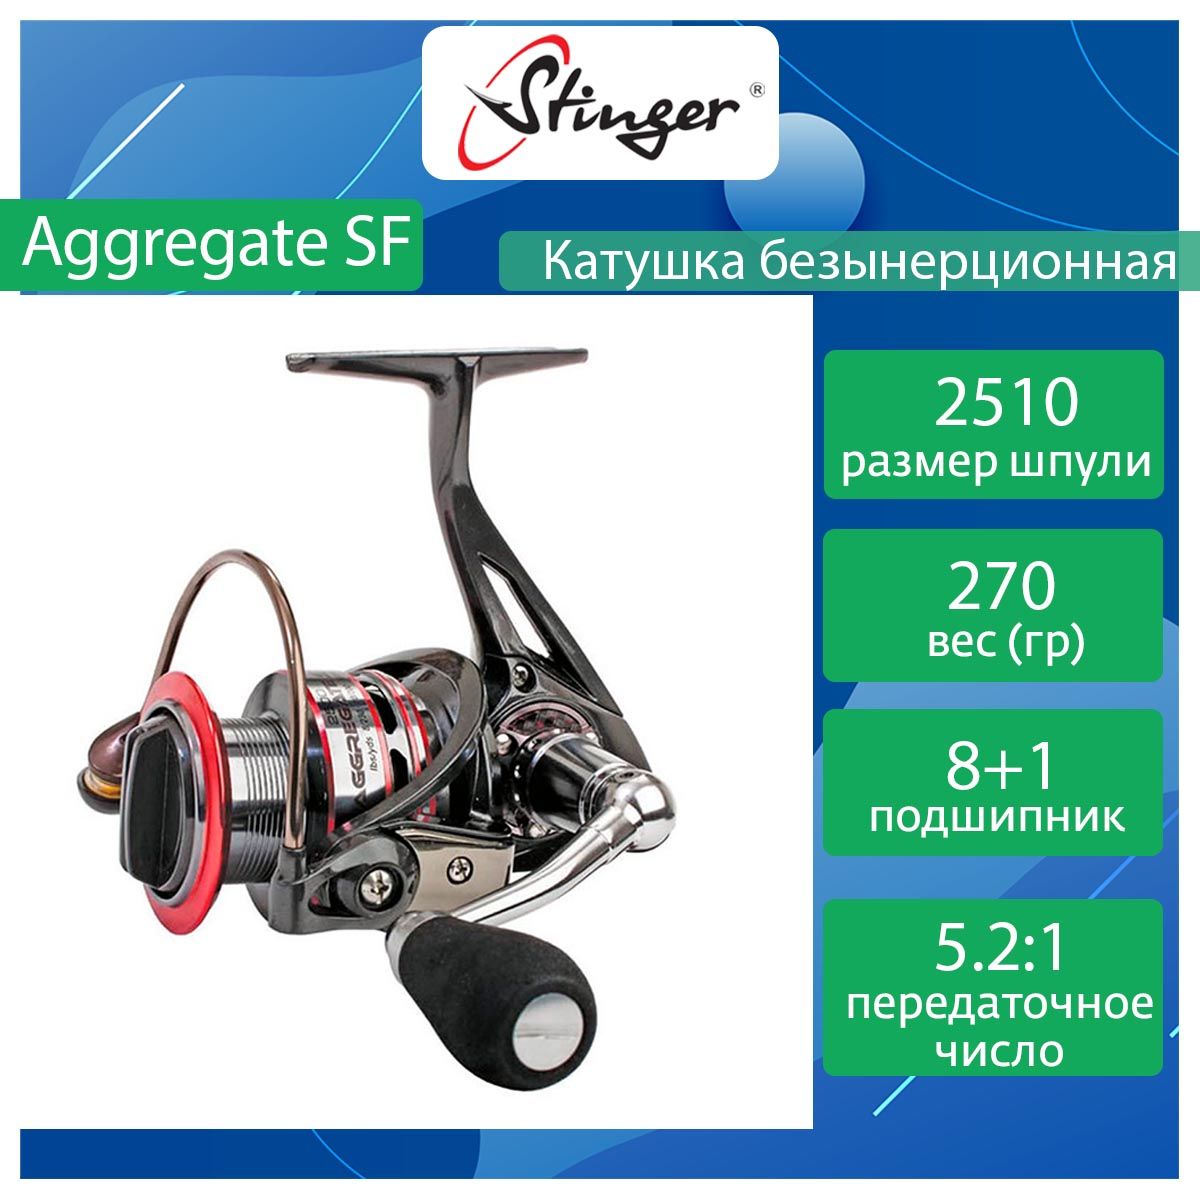 Катушка для рыбалки безынерционная Stinger Aggregate SF ASF ef47276